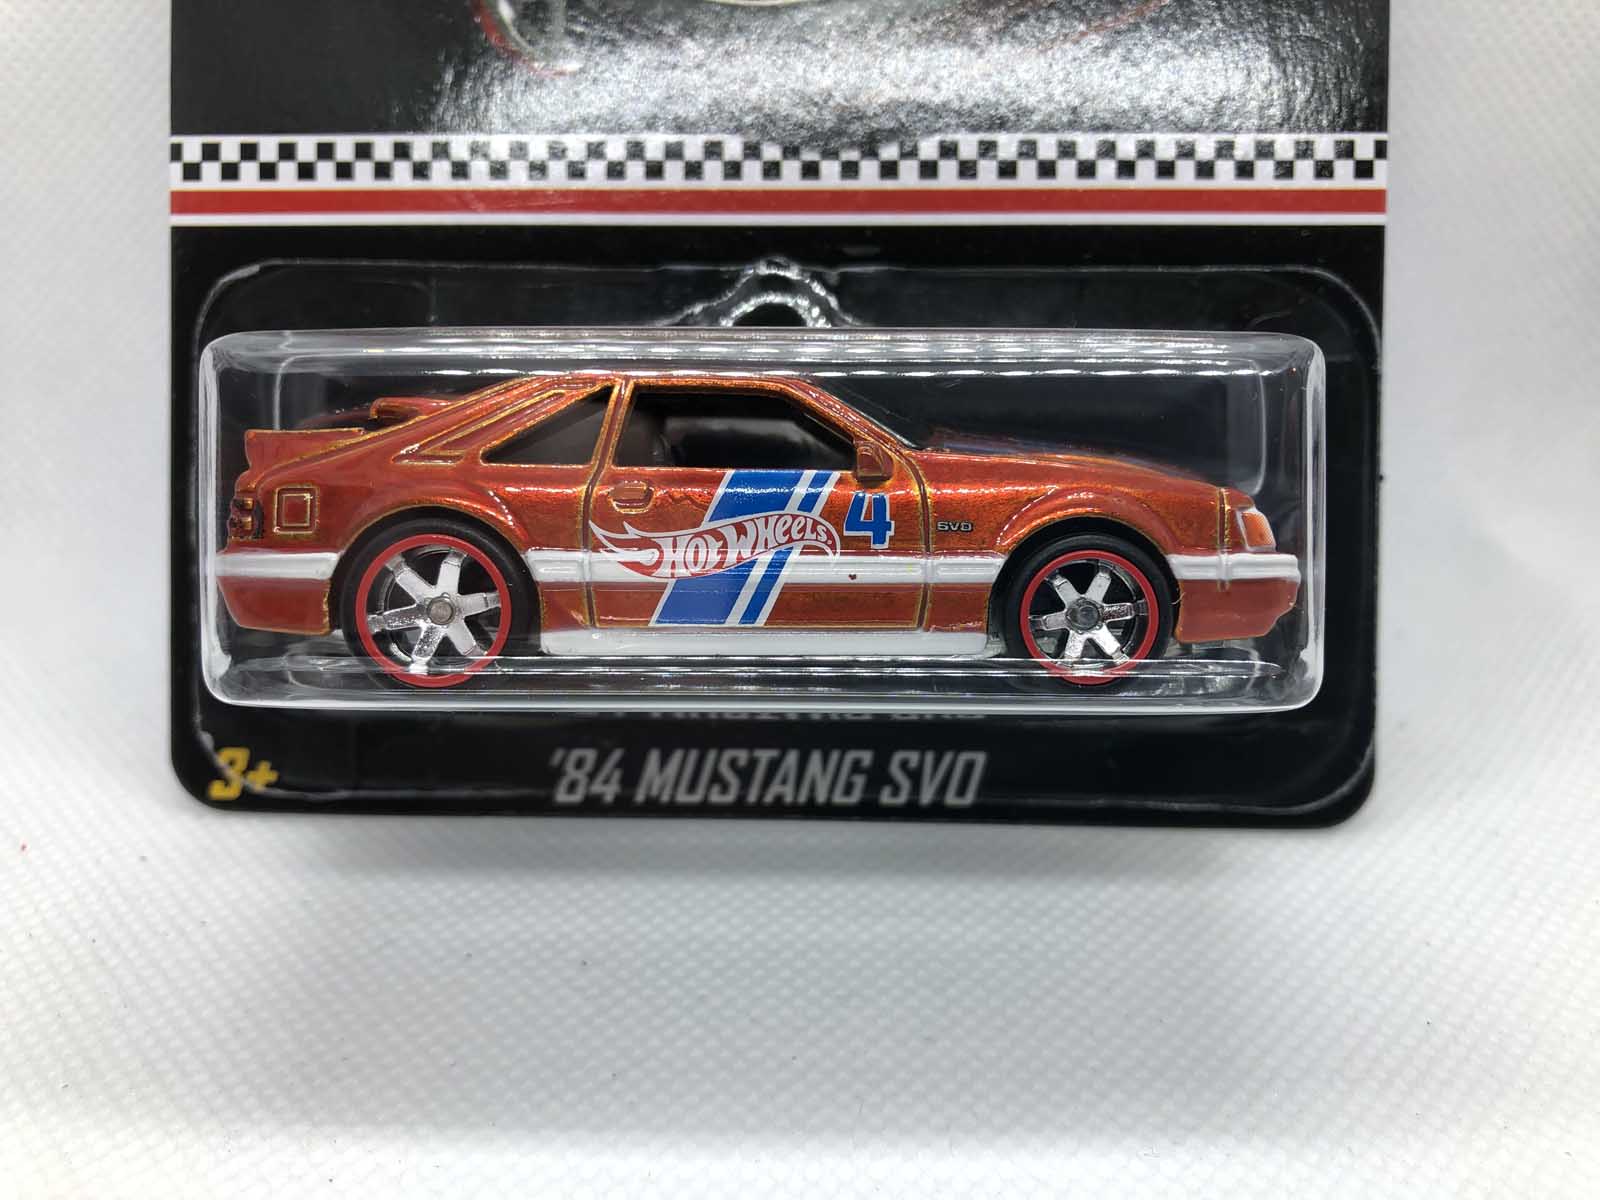 '84 Mustang SVO